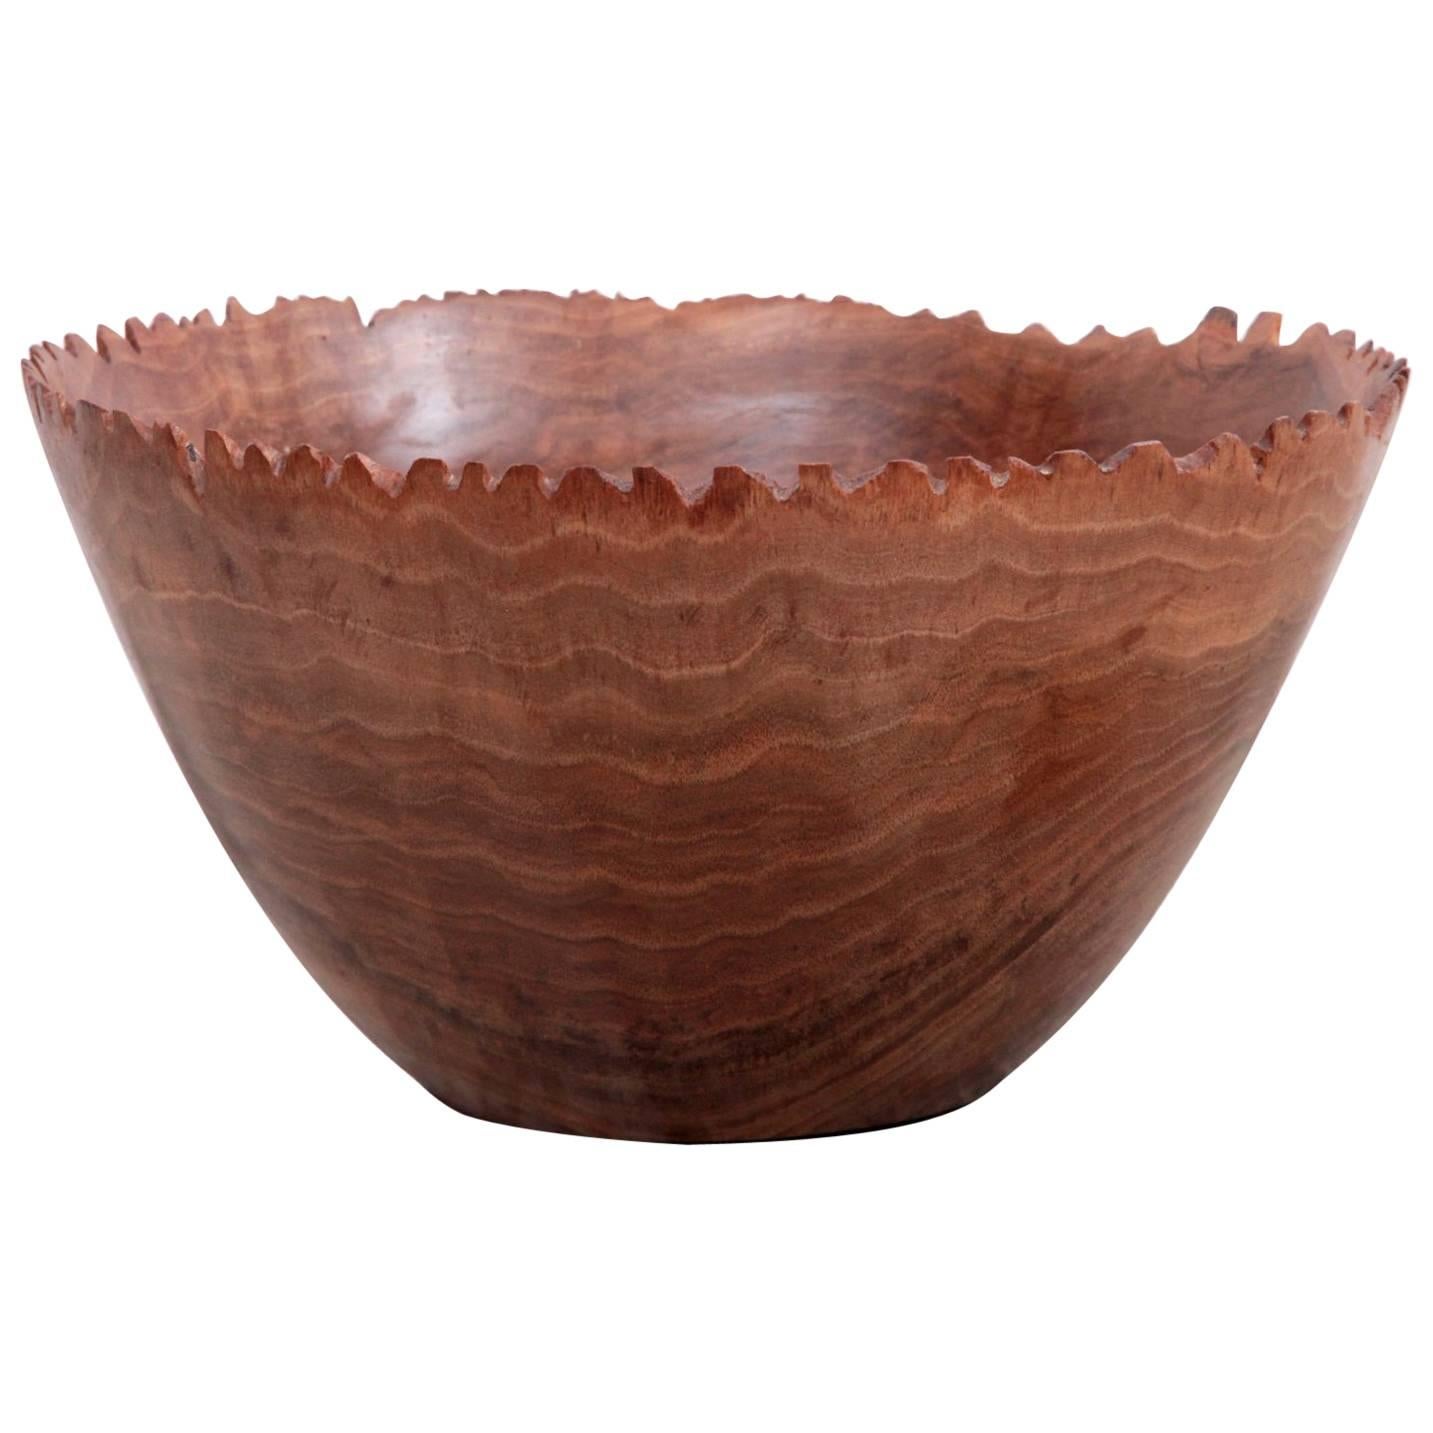 Huge Turned Wood Bowl by Woodworker Eckart Mohlenbeck